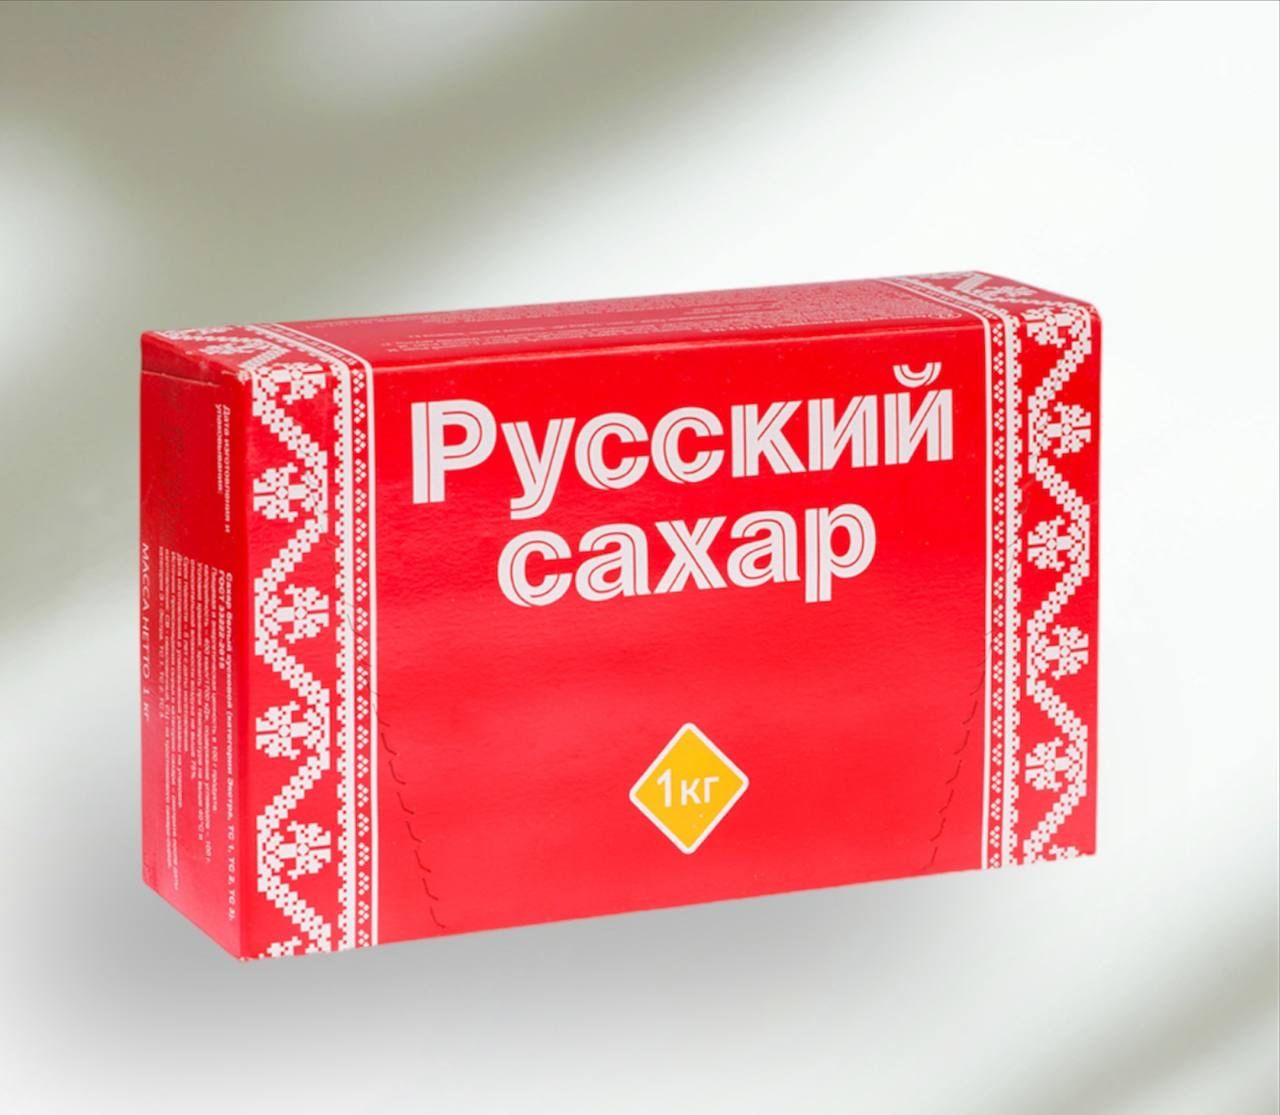 Сахар купить в новосибирске. Сахар рафинад. Русский сахар. Сахар упаковка. Сахар в красной упаковке.